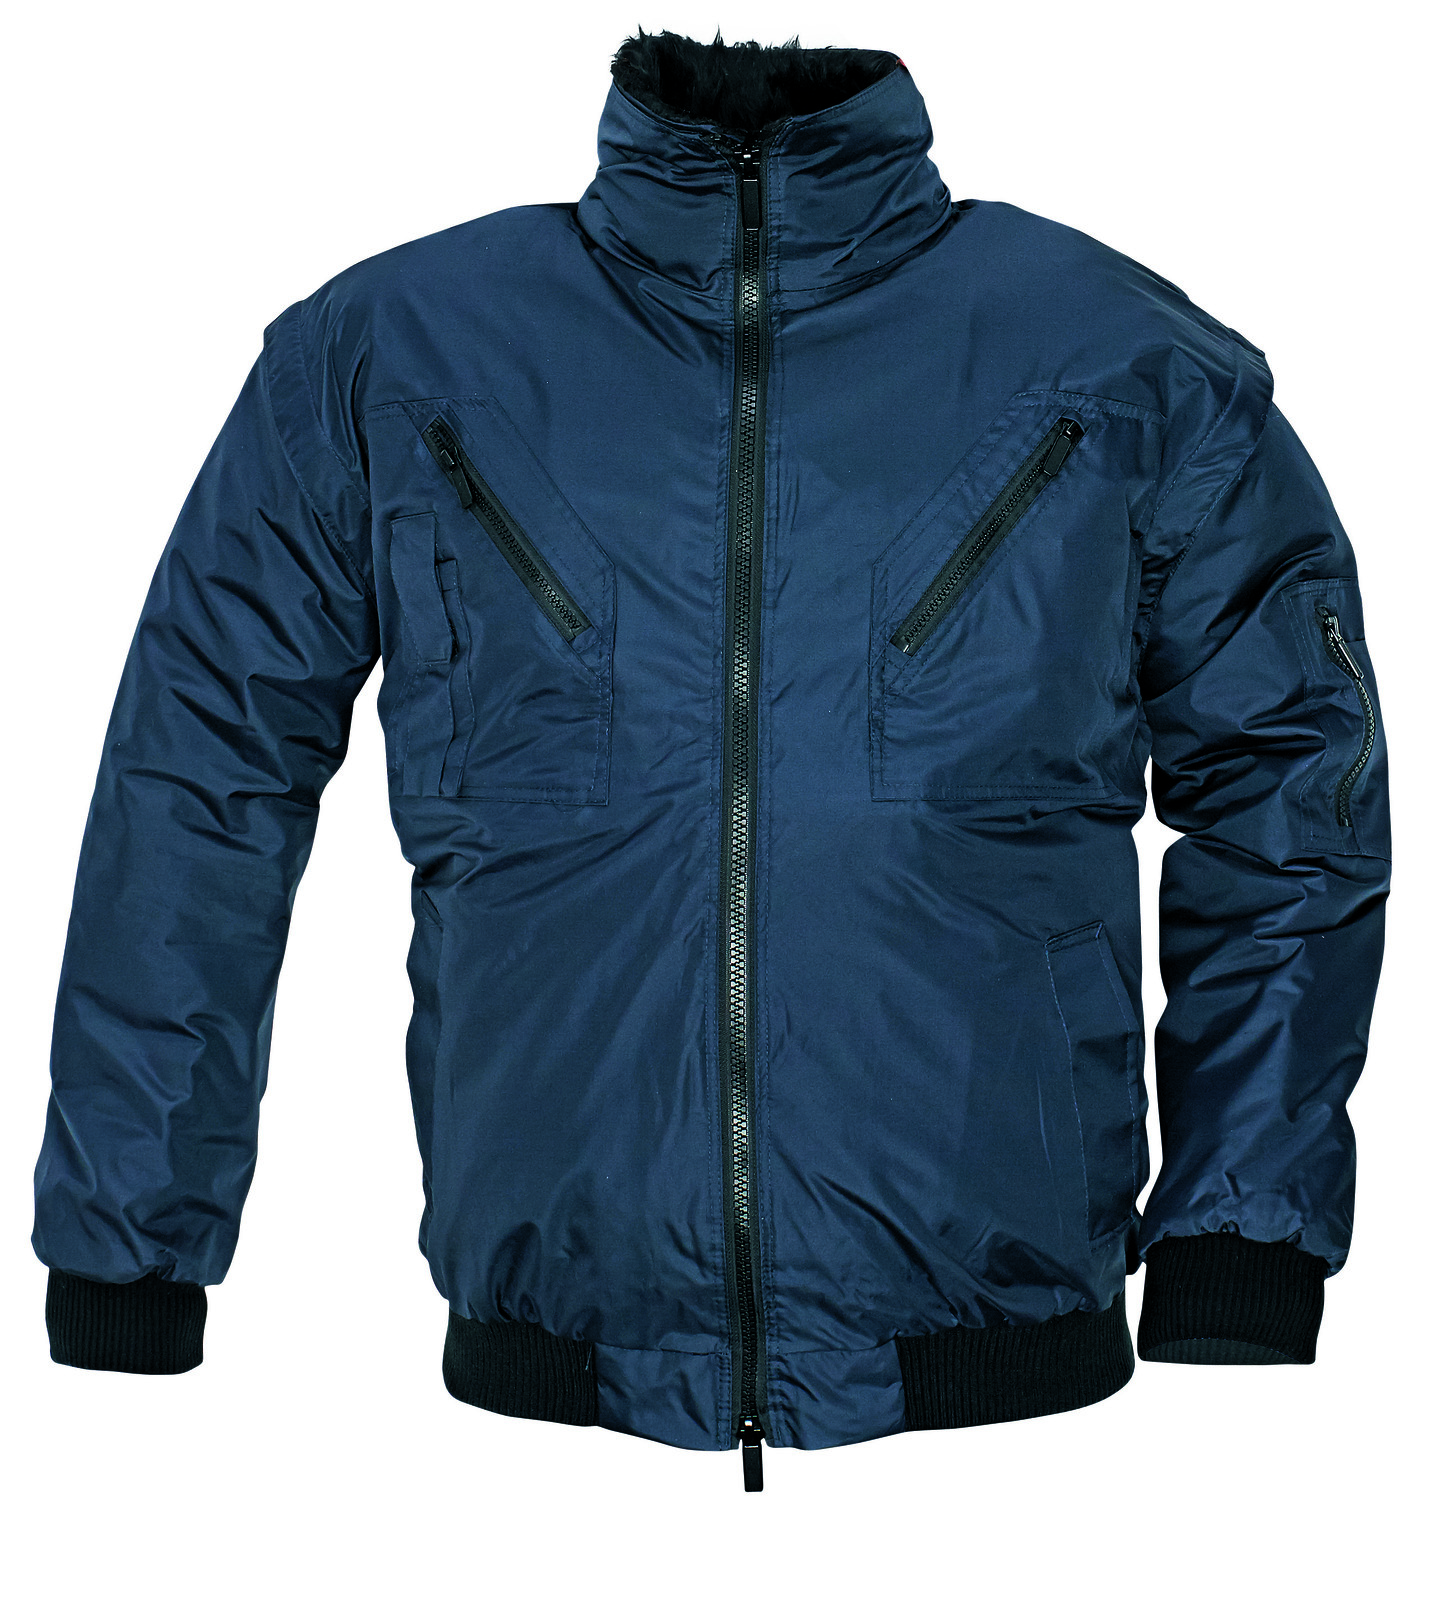 Zimná bunda a vesta Pilot 3v1 pánska - veľkosť: S, farba: navy